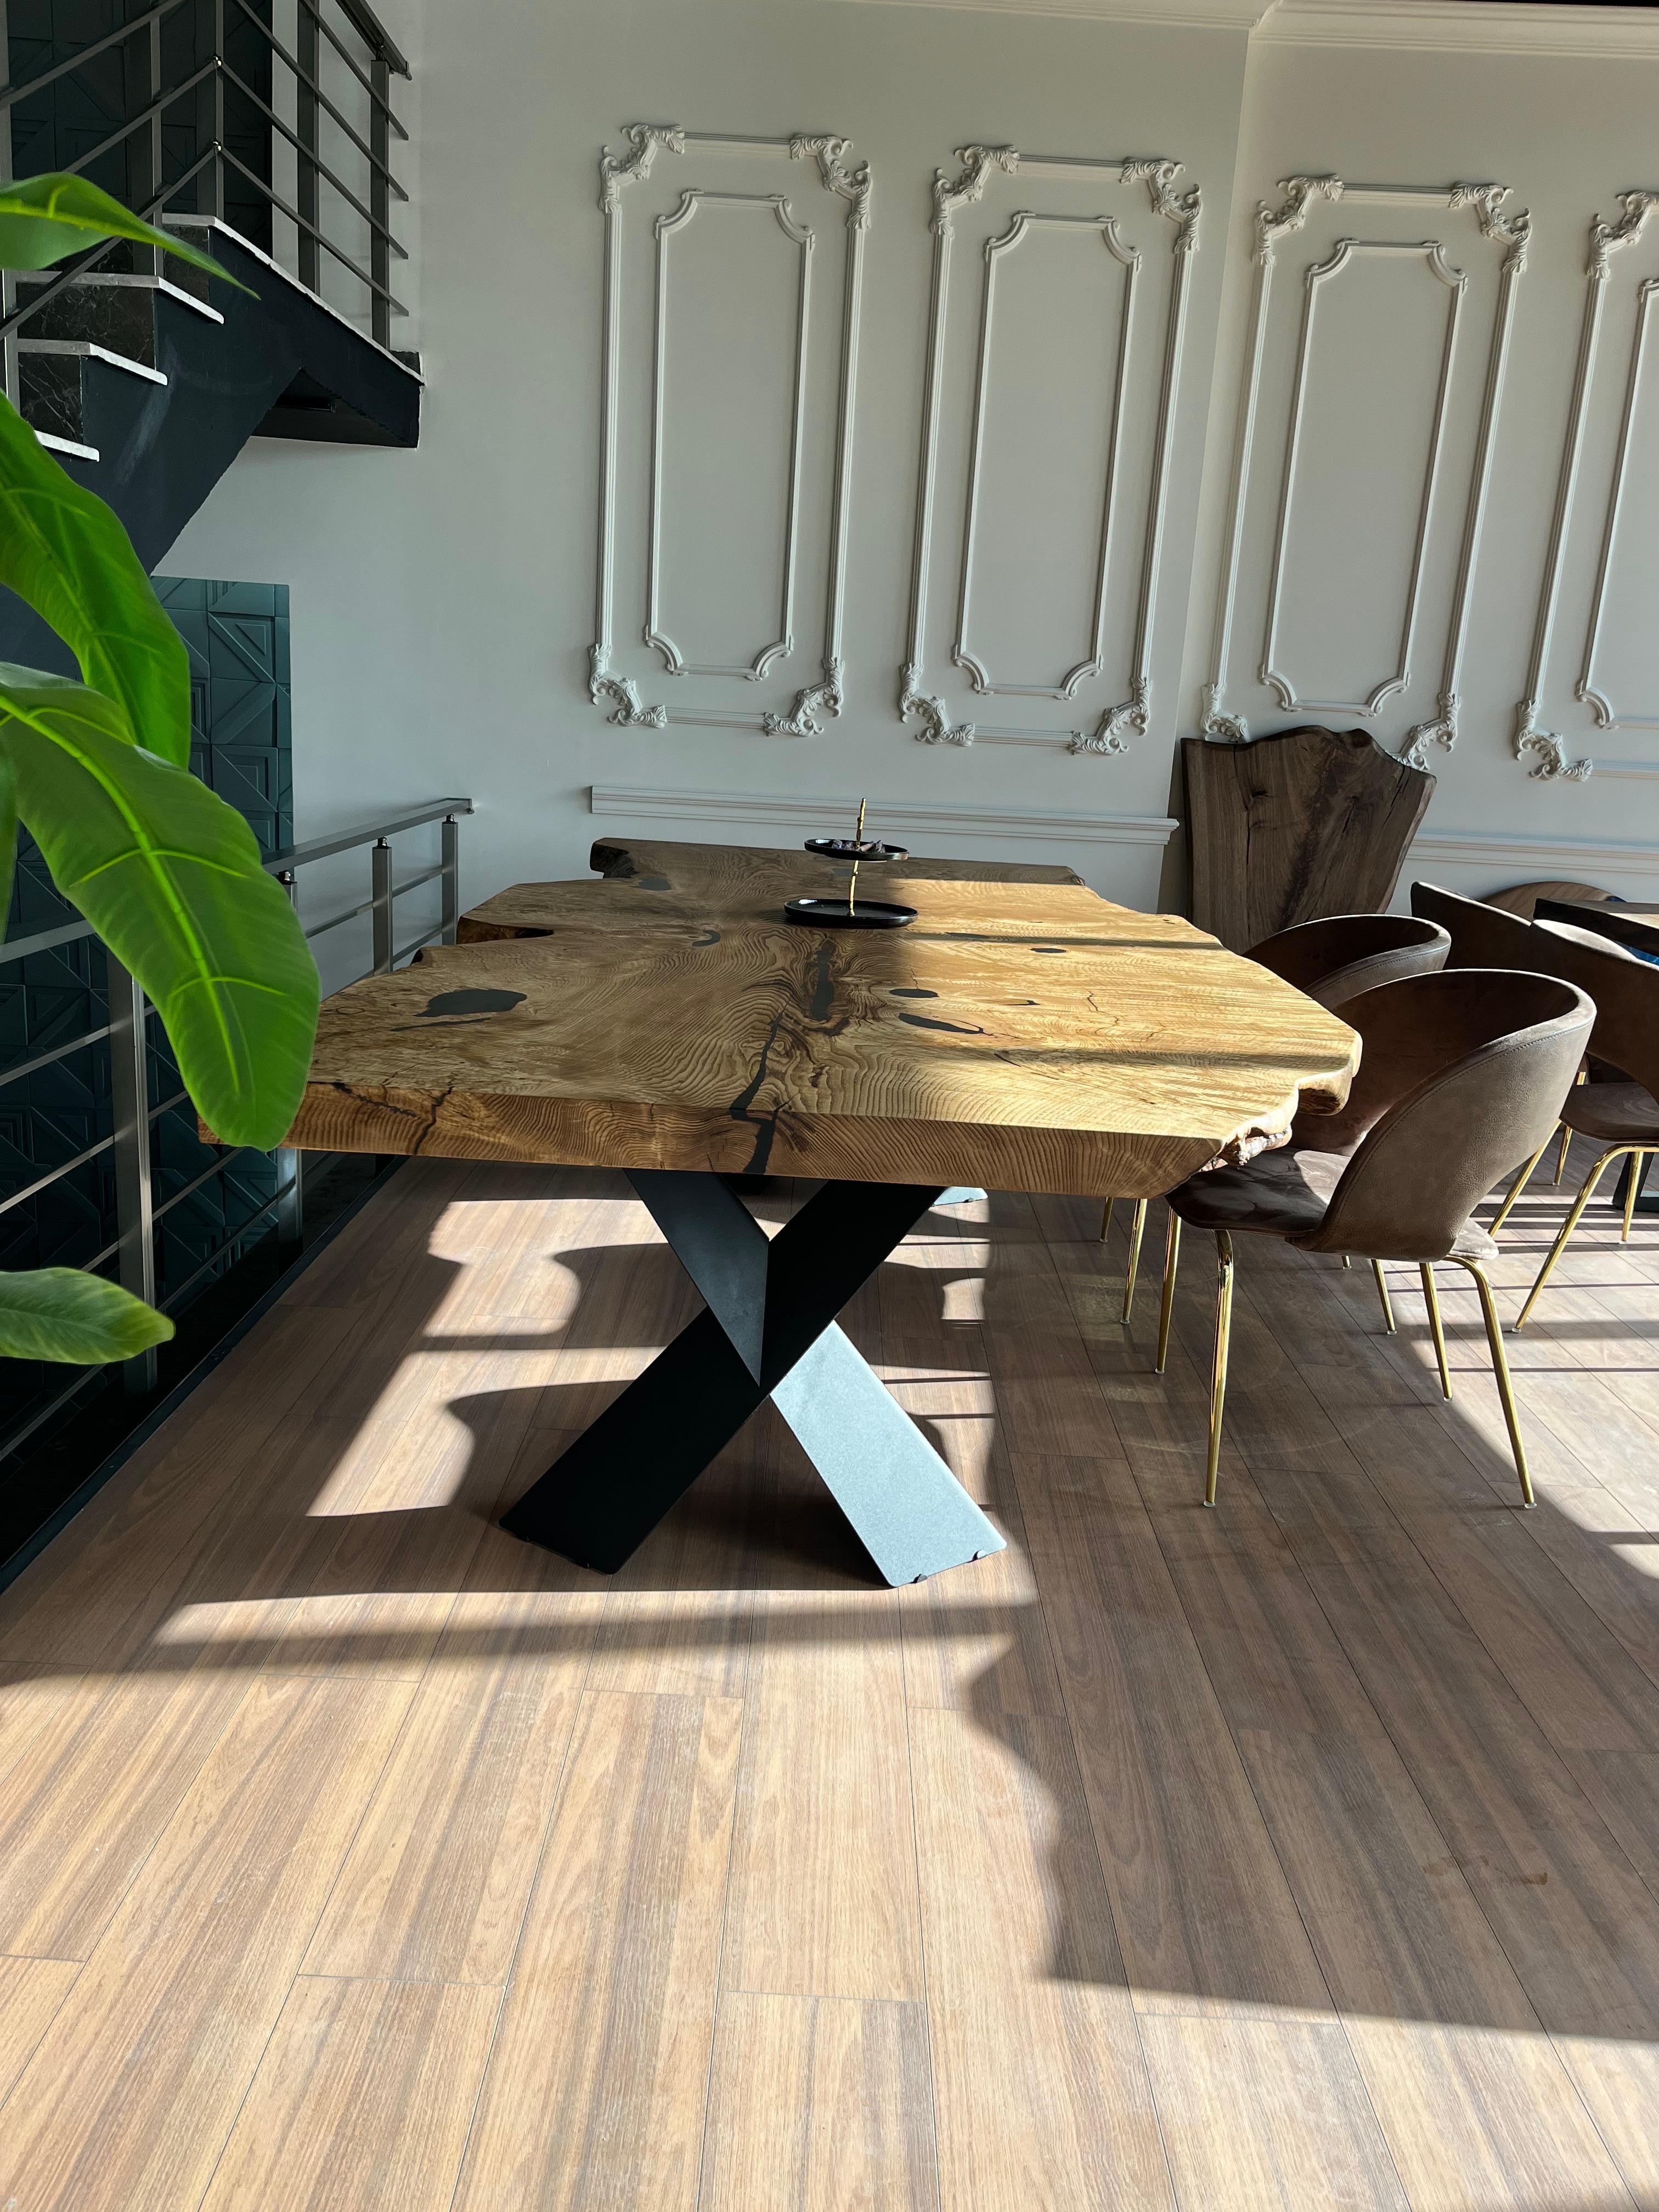 LIVE EDGE ESSTISCH AUS ESCHENHOLZ

Dieser Tisch ist aus natürlichen Eschenholzplatten gefertigt. 

Einige Eschenholzplatten sind von natürlicher Schönheit, da sie auf einer Seite eine große Wölbung haben. Dies ist einer von ihnen! 

Wir haben die